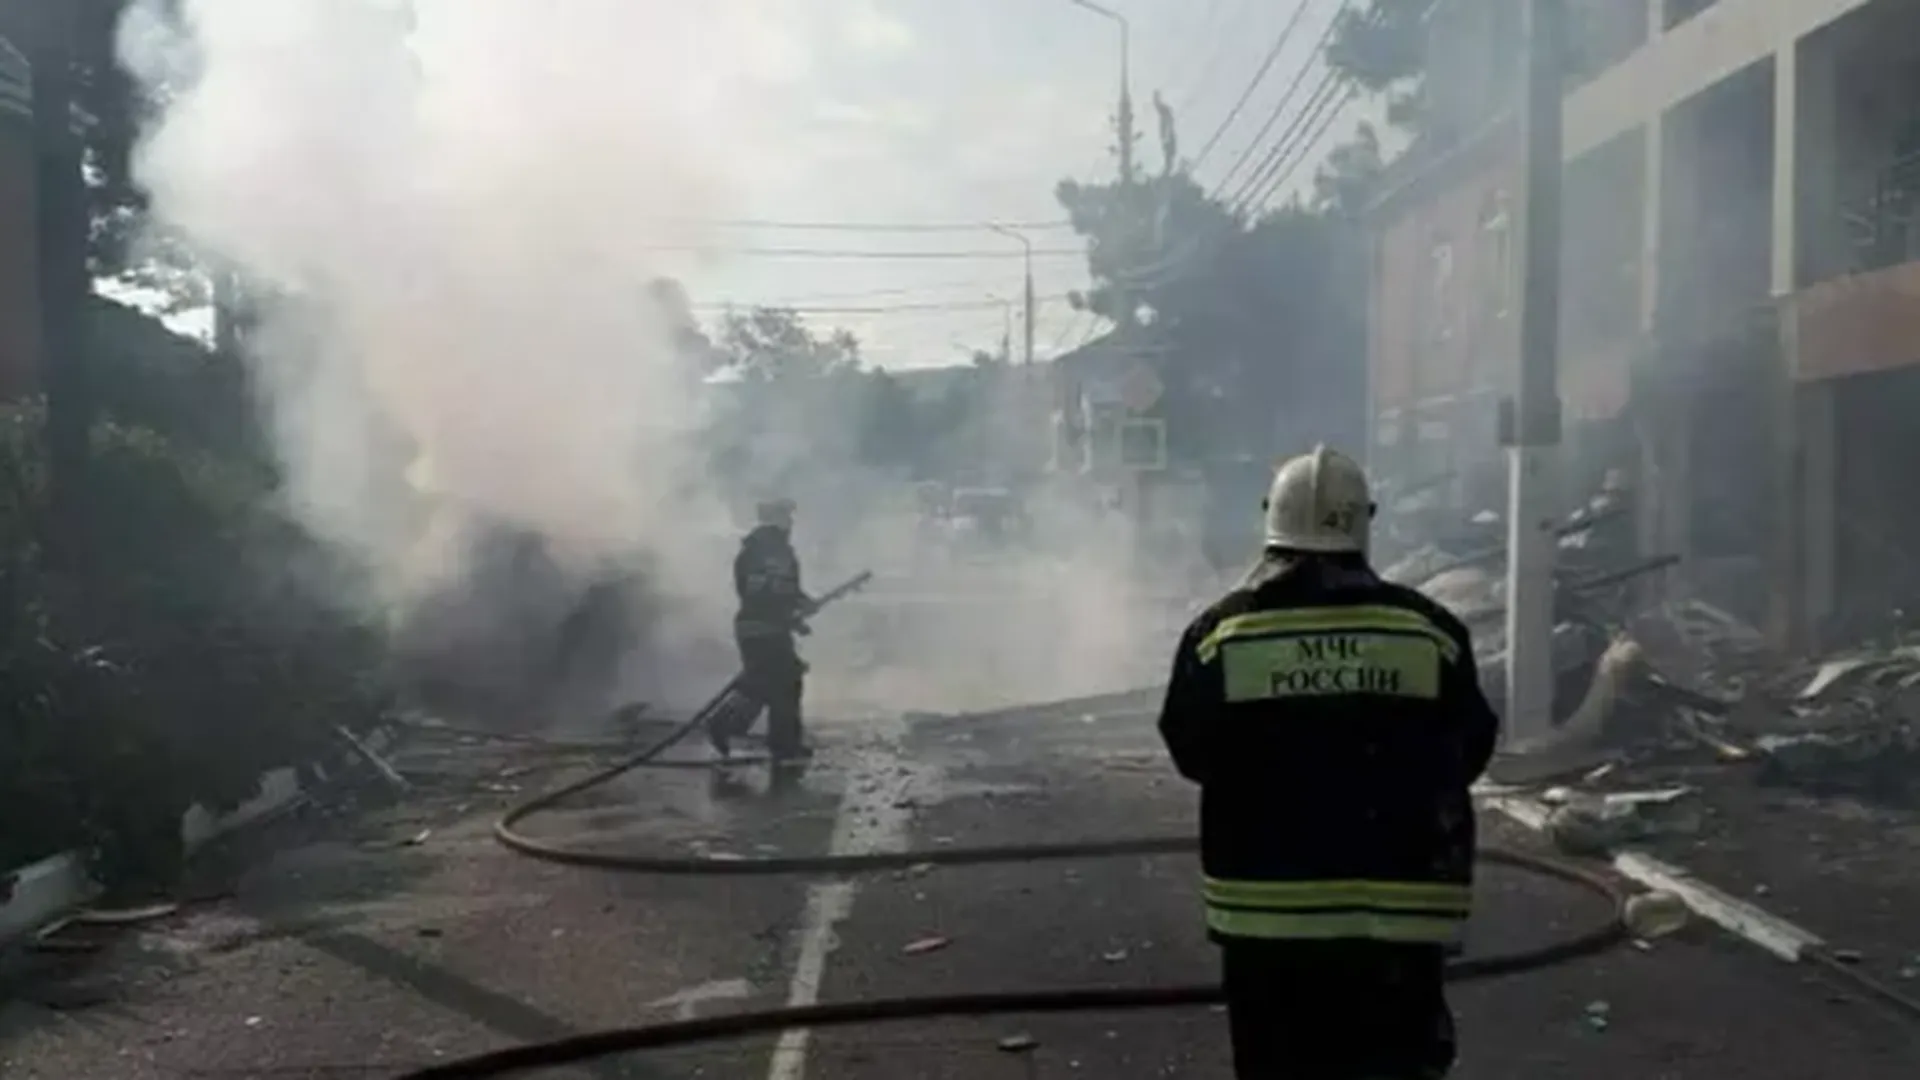 МЧС уточнило число пострадавших при взрыве в Геленджике